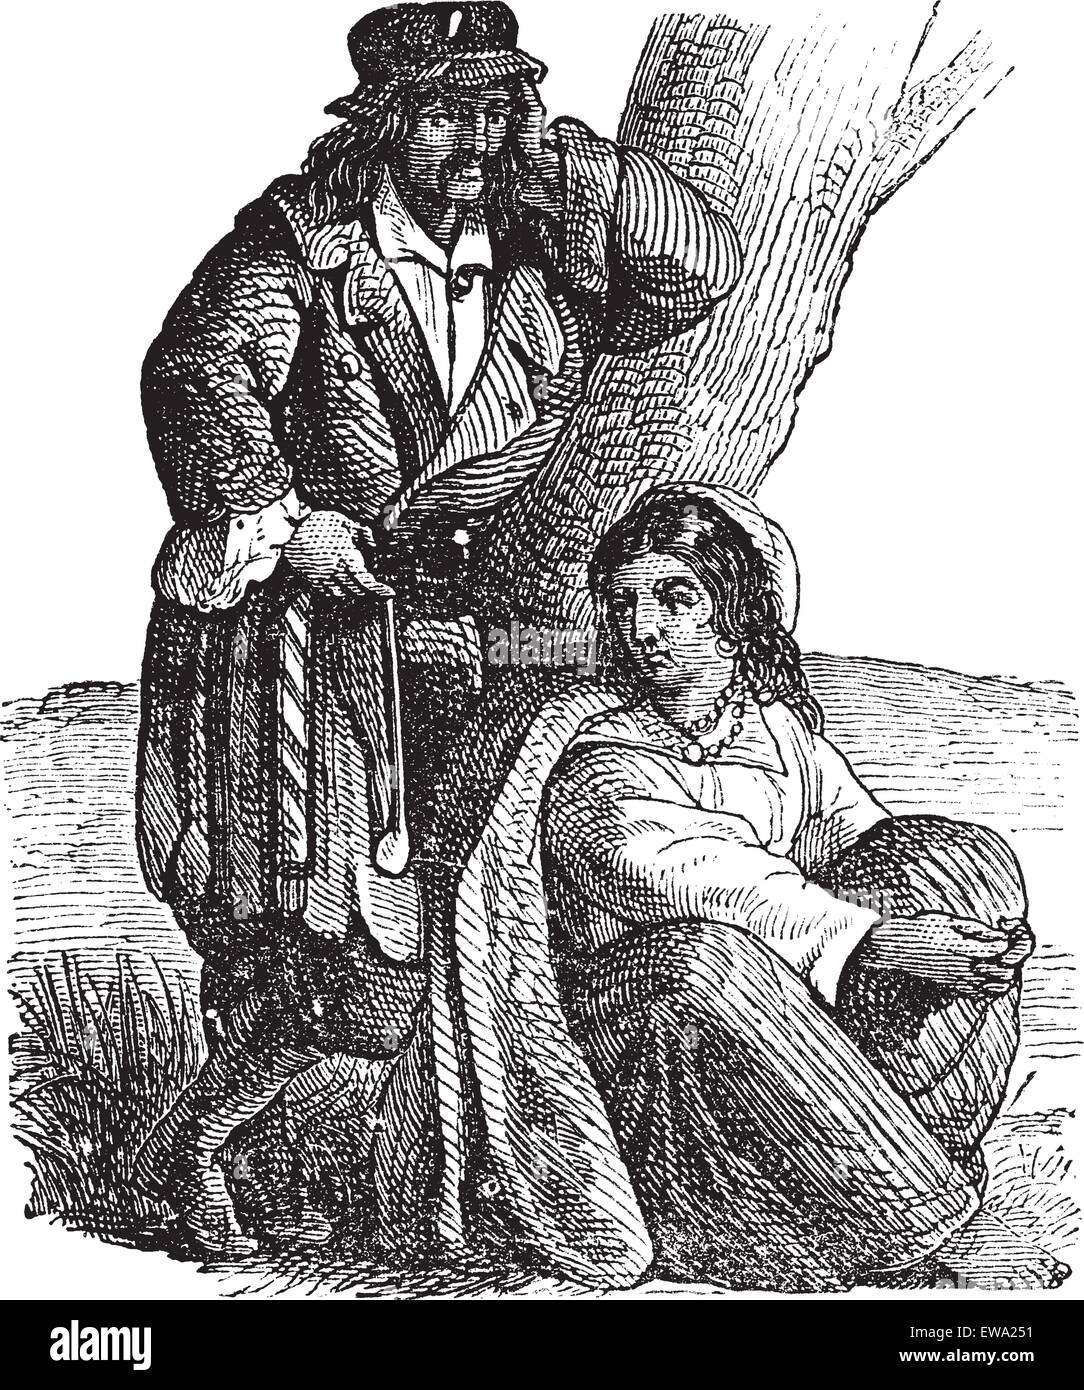 Jeune couple tsigane par tree vintage la gravure. Vieille illustration gravée de Gypsy Woman, femme assise alors que man leaning on tree Illustration de Vecteur